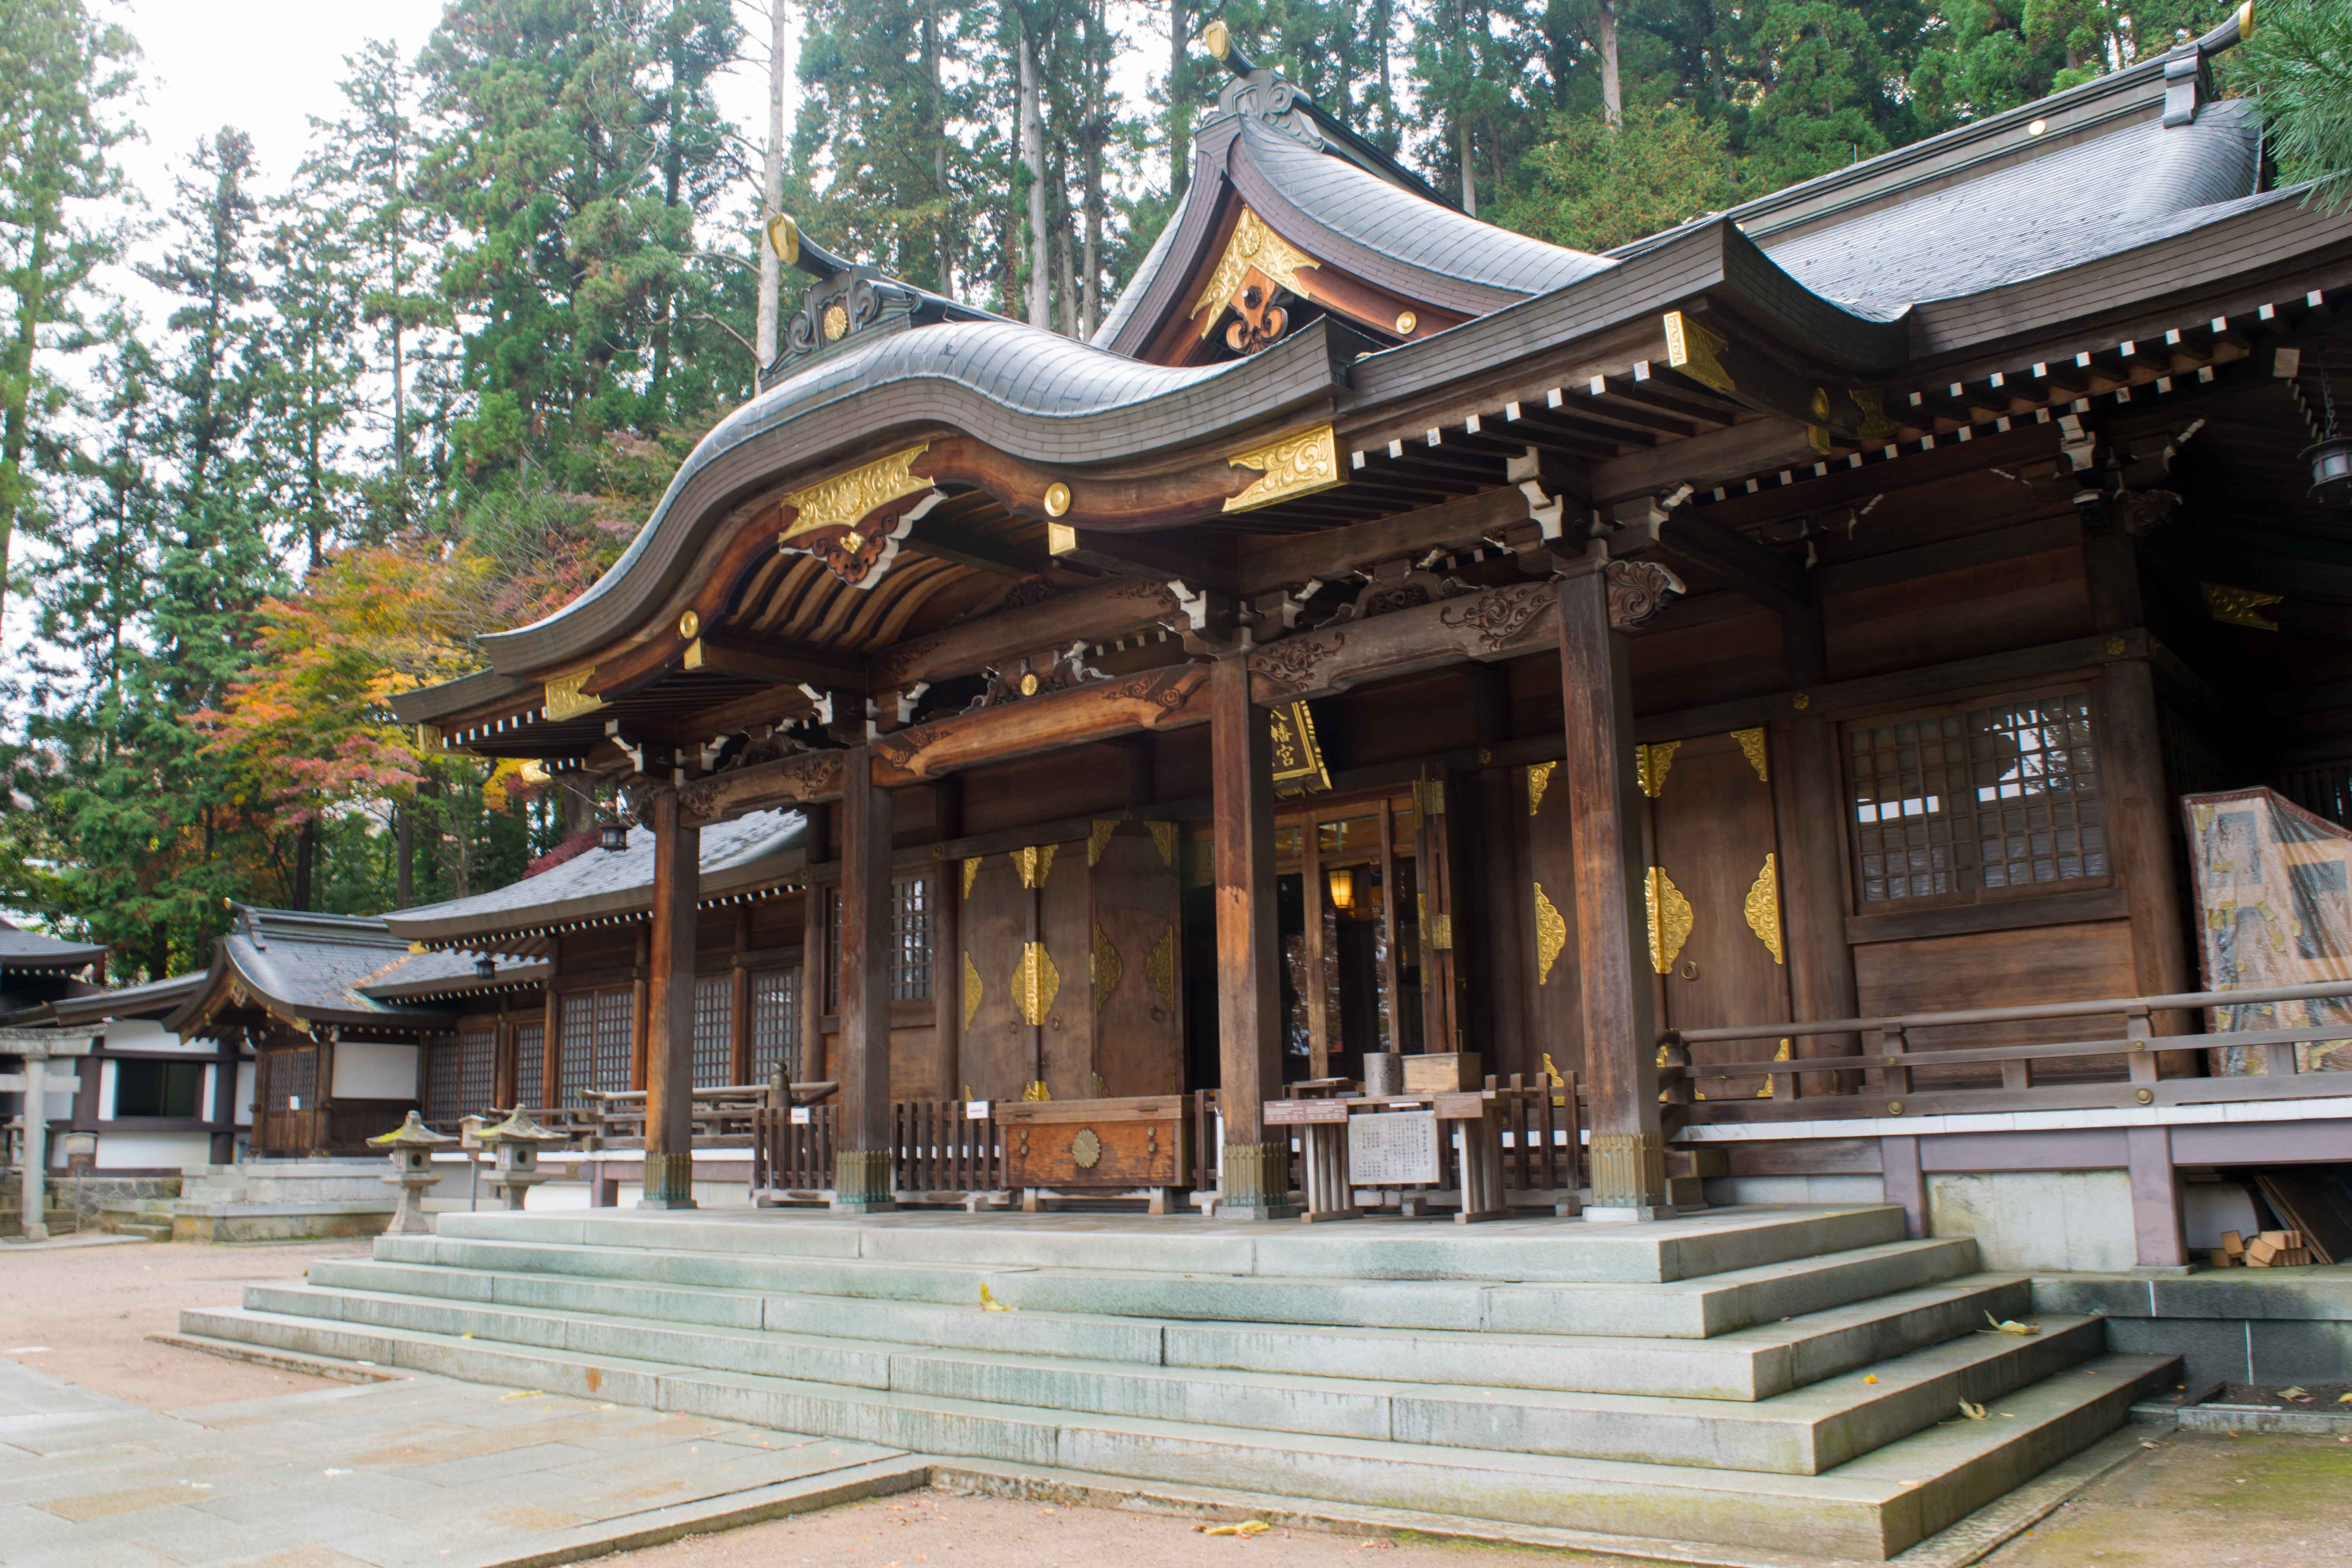 Visite o Hachiman Shrine em um dia em Takayama.